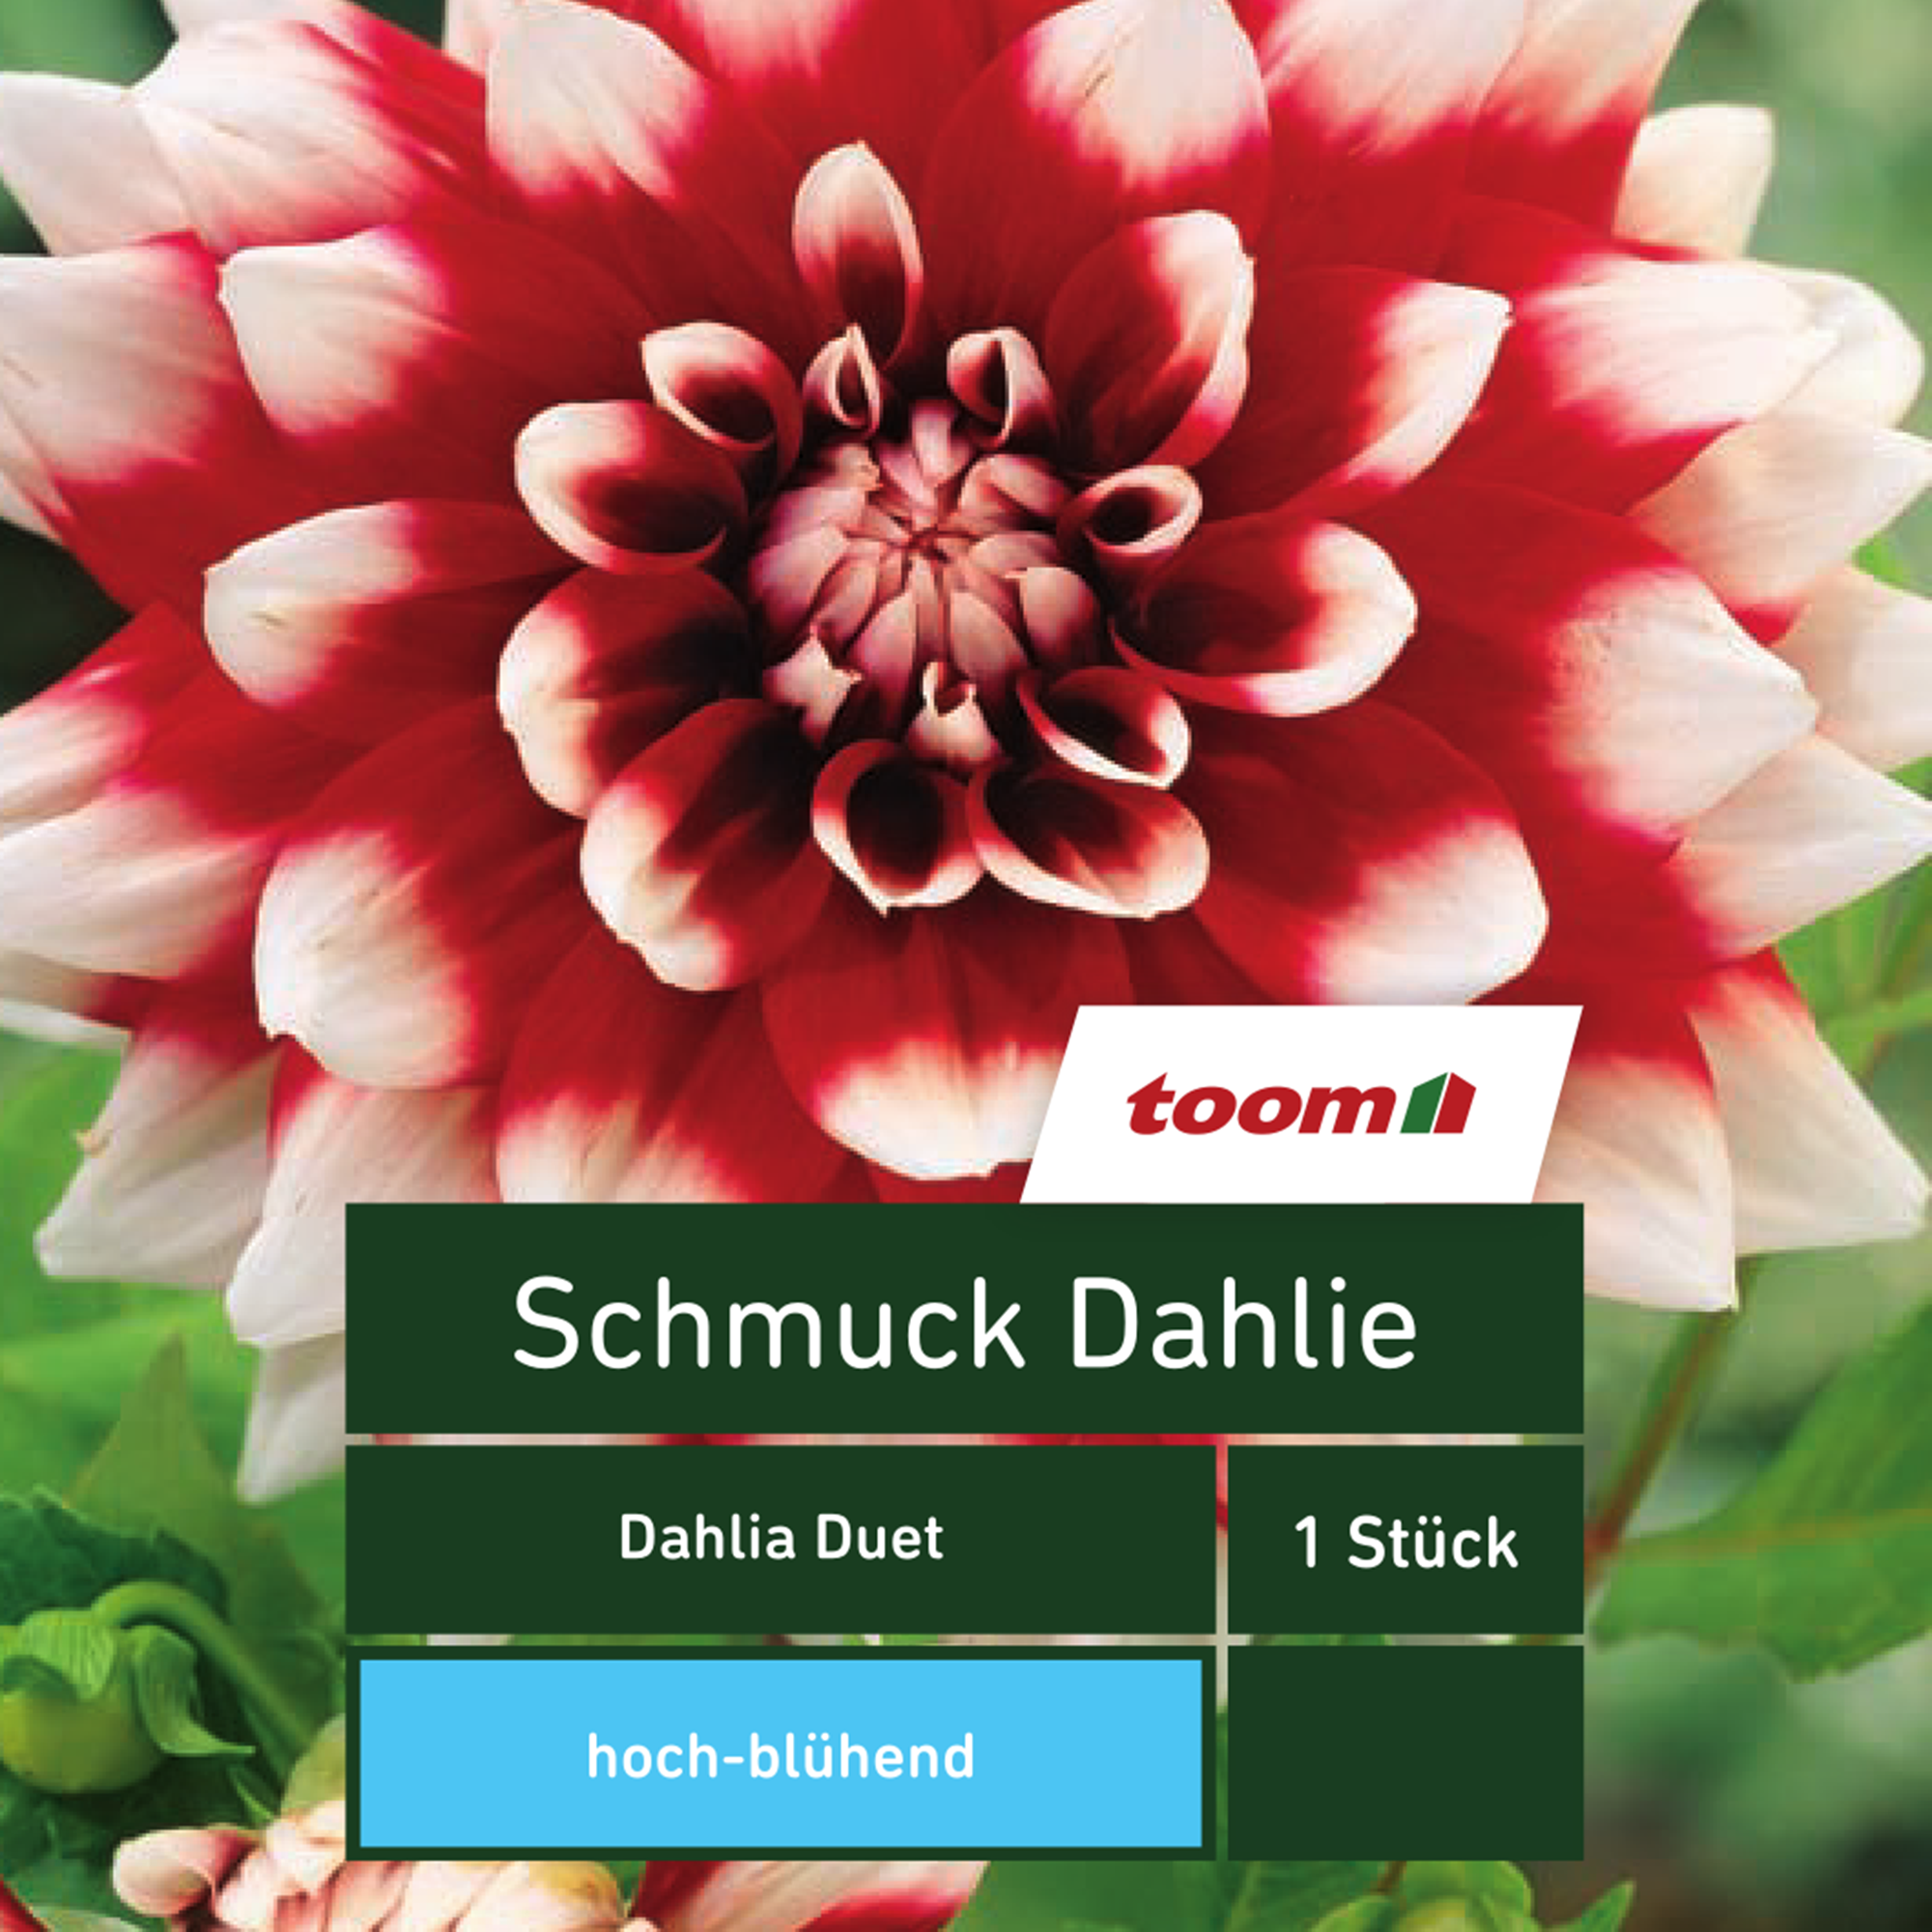 Schmuck-Dahlie 'Dahlia Duet', 1 Stück, rot-weiß + product picture